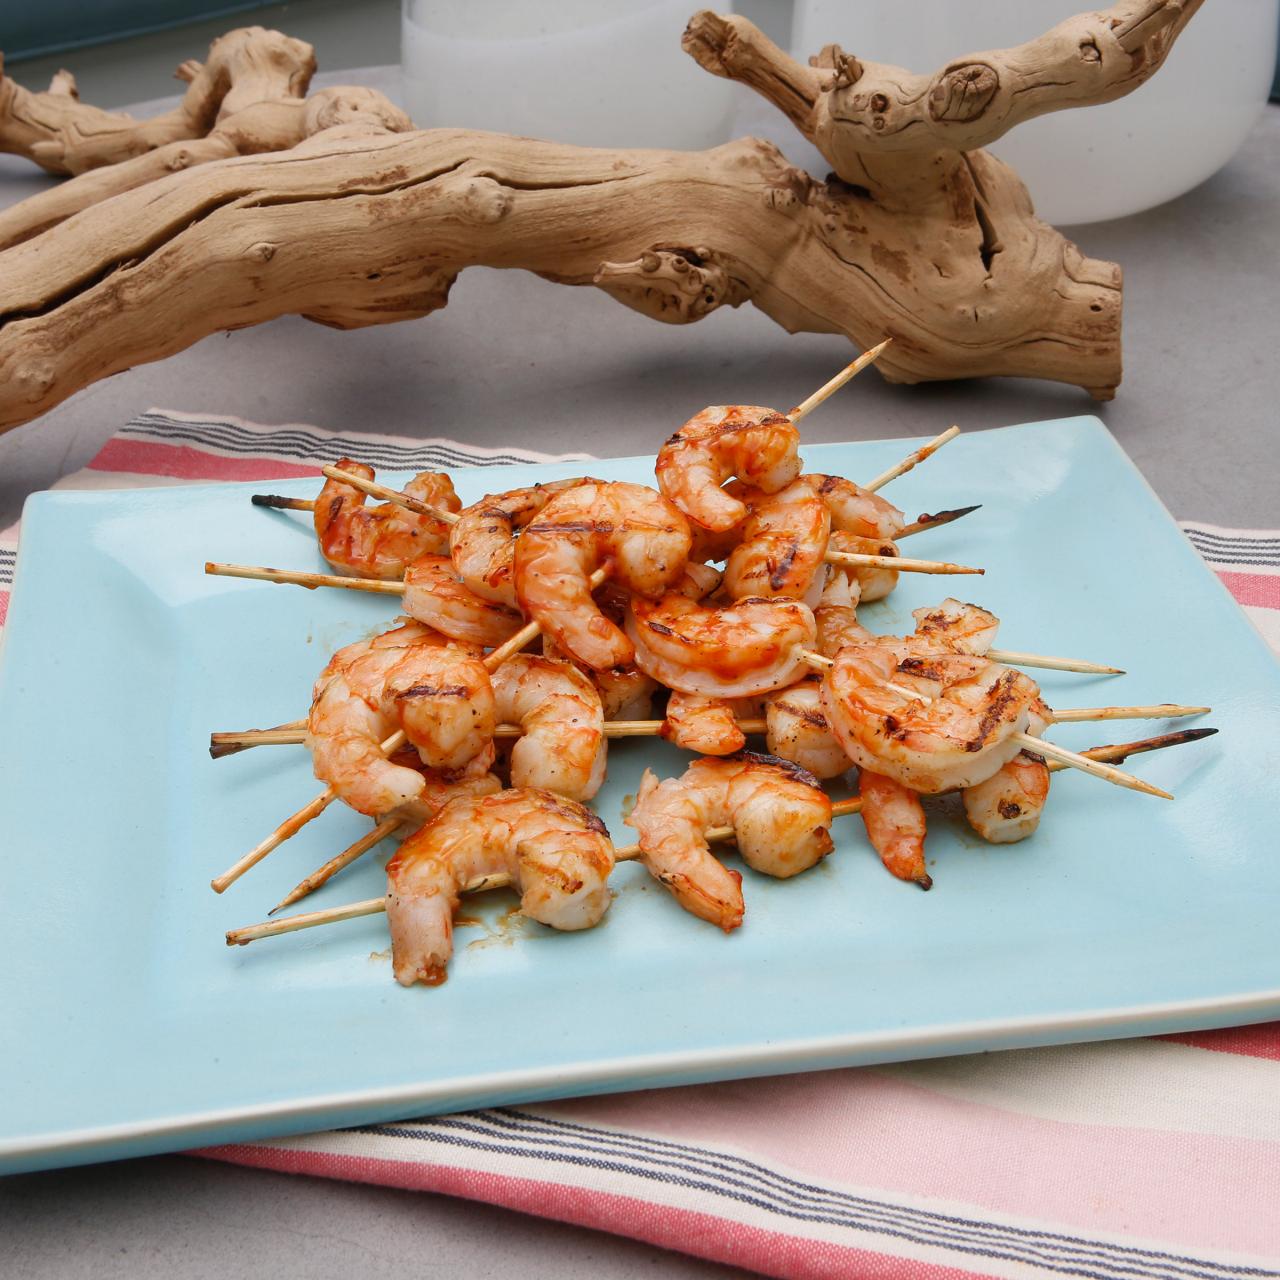 BBQ Shrimp Seasoning – Salt Free